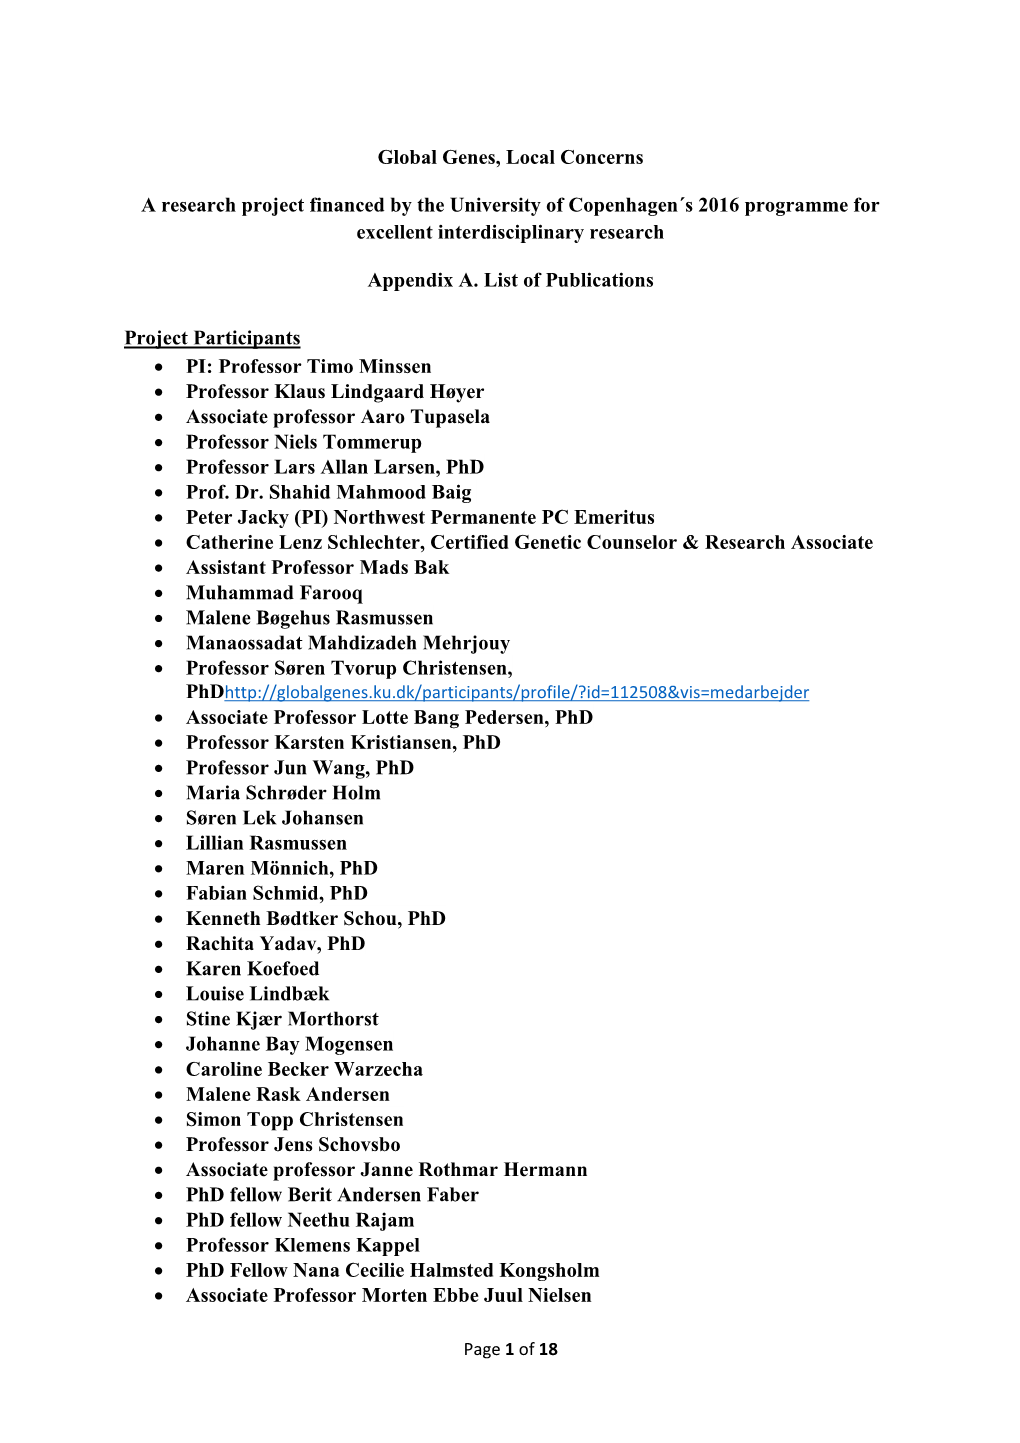 Appendix A. List of Publications